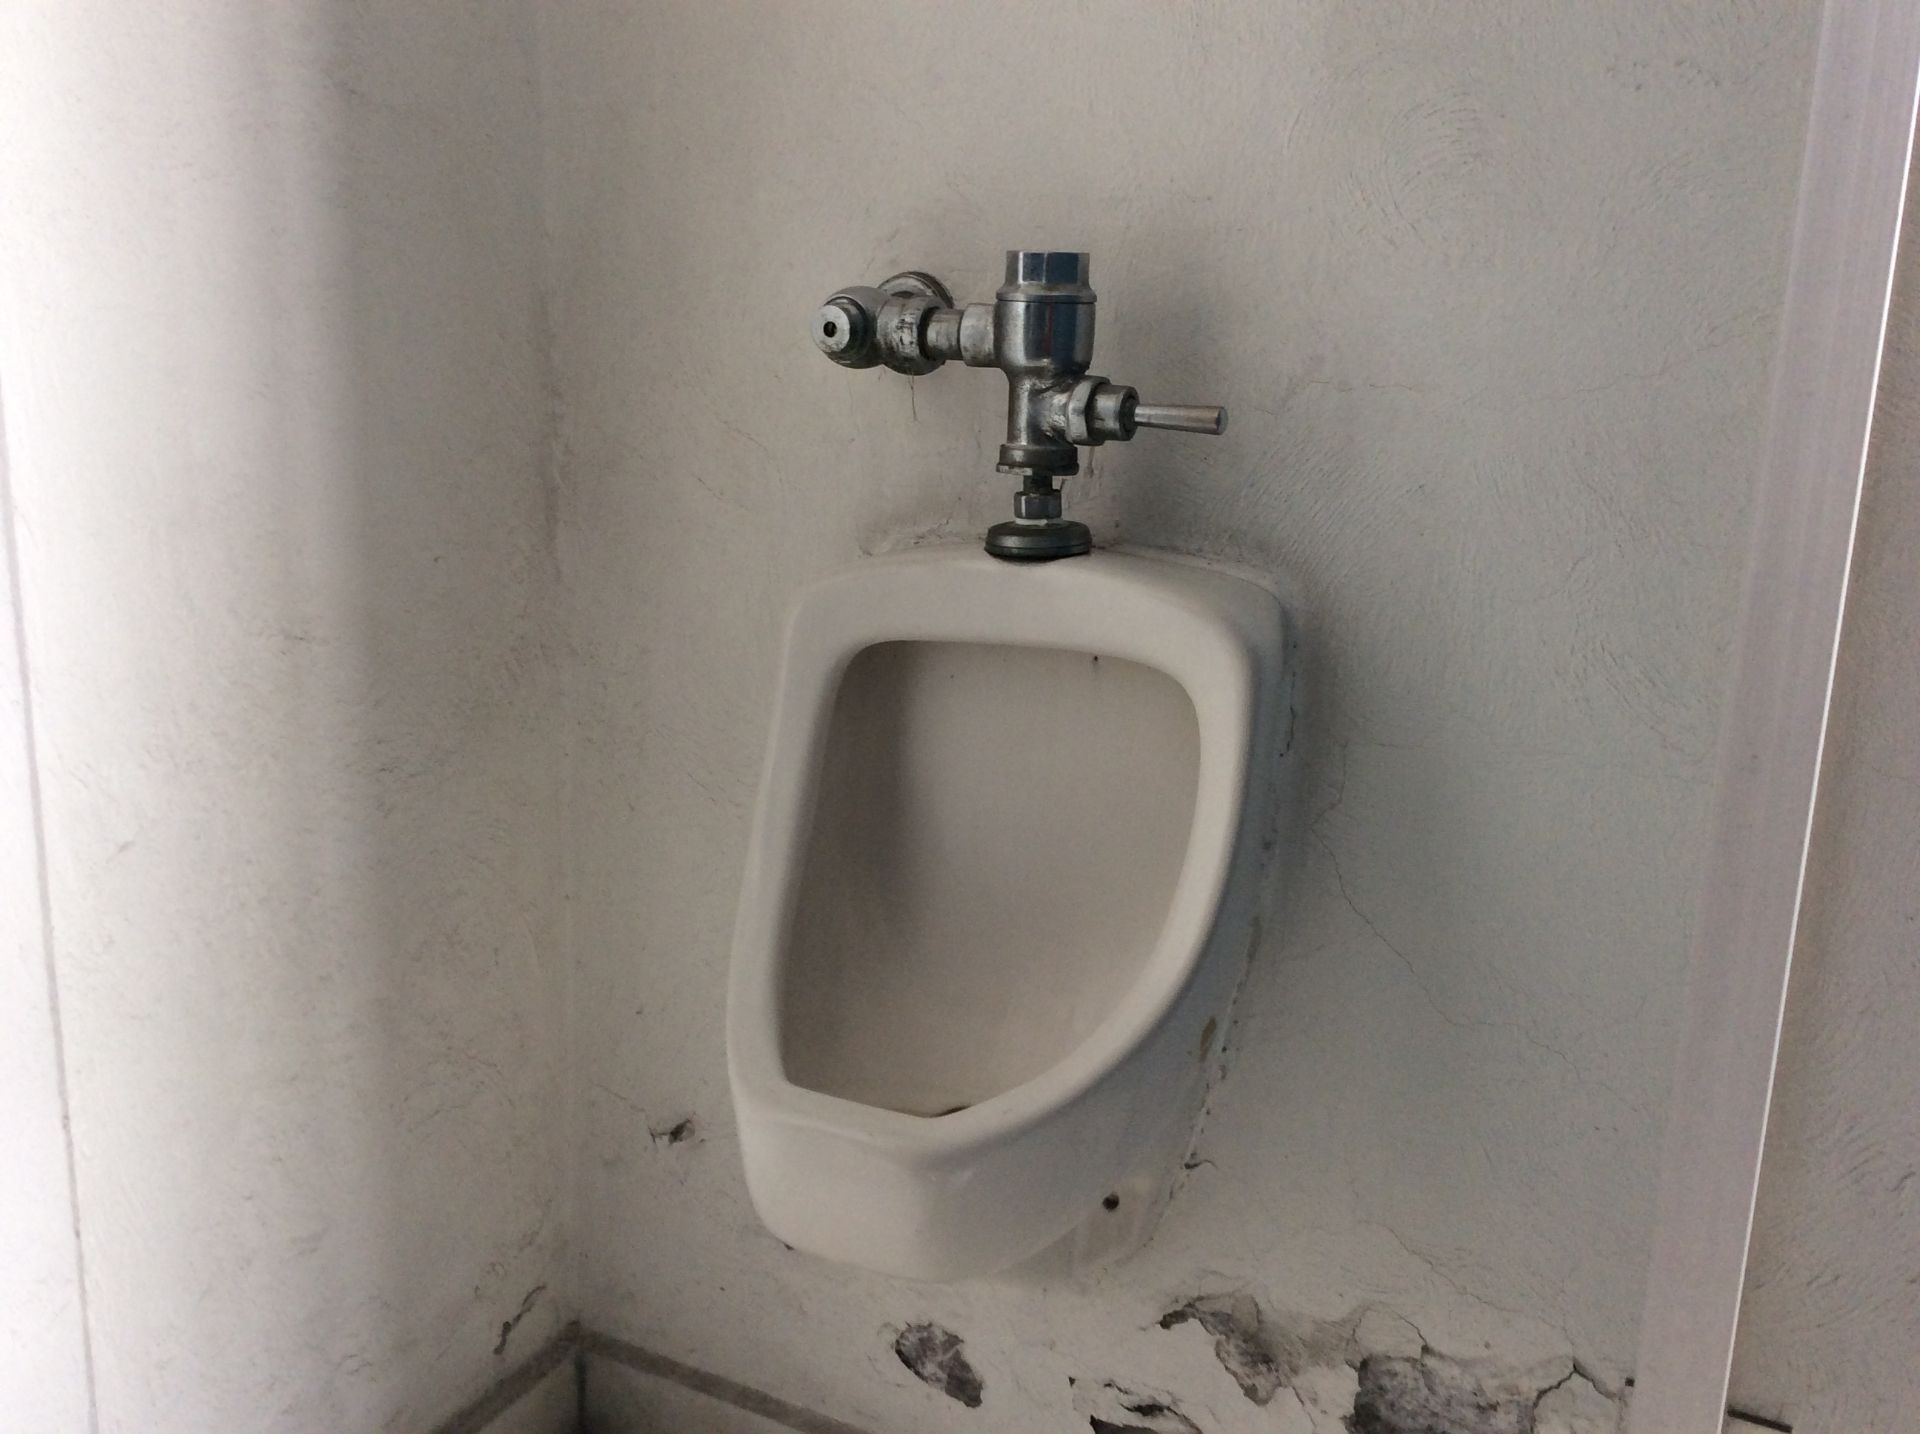 Baño de hombres oficinas planta baja, 3 WC - Image 8 of 12